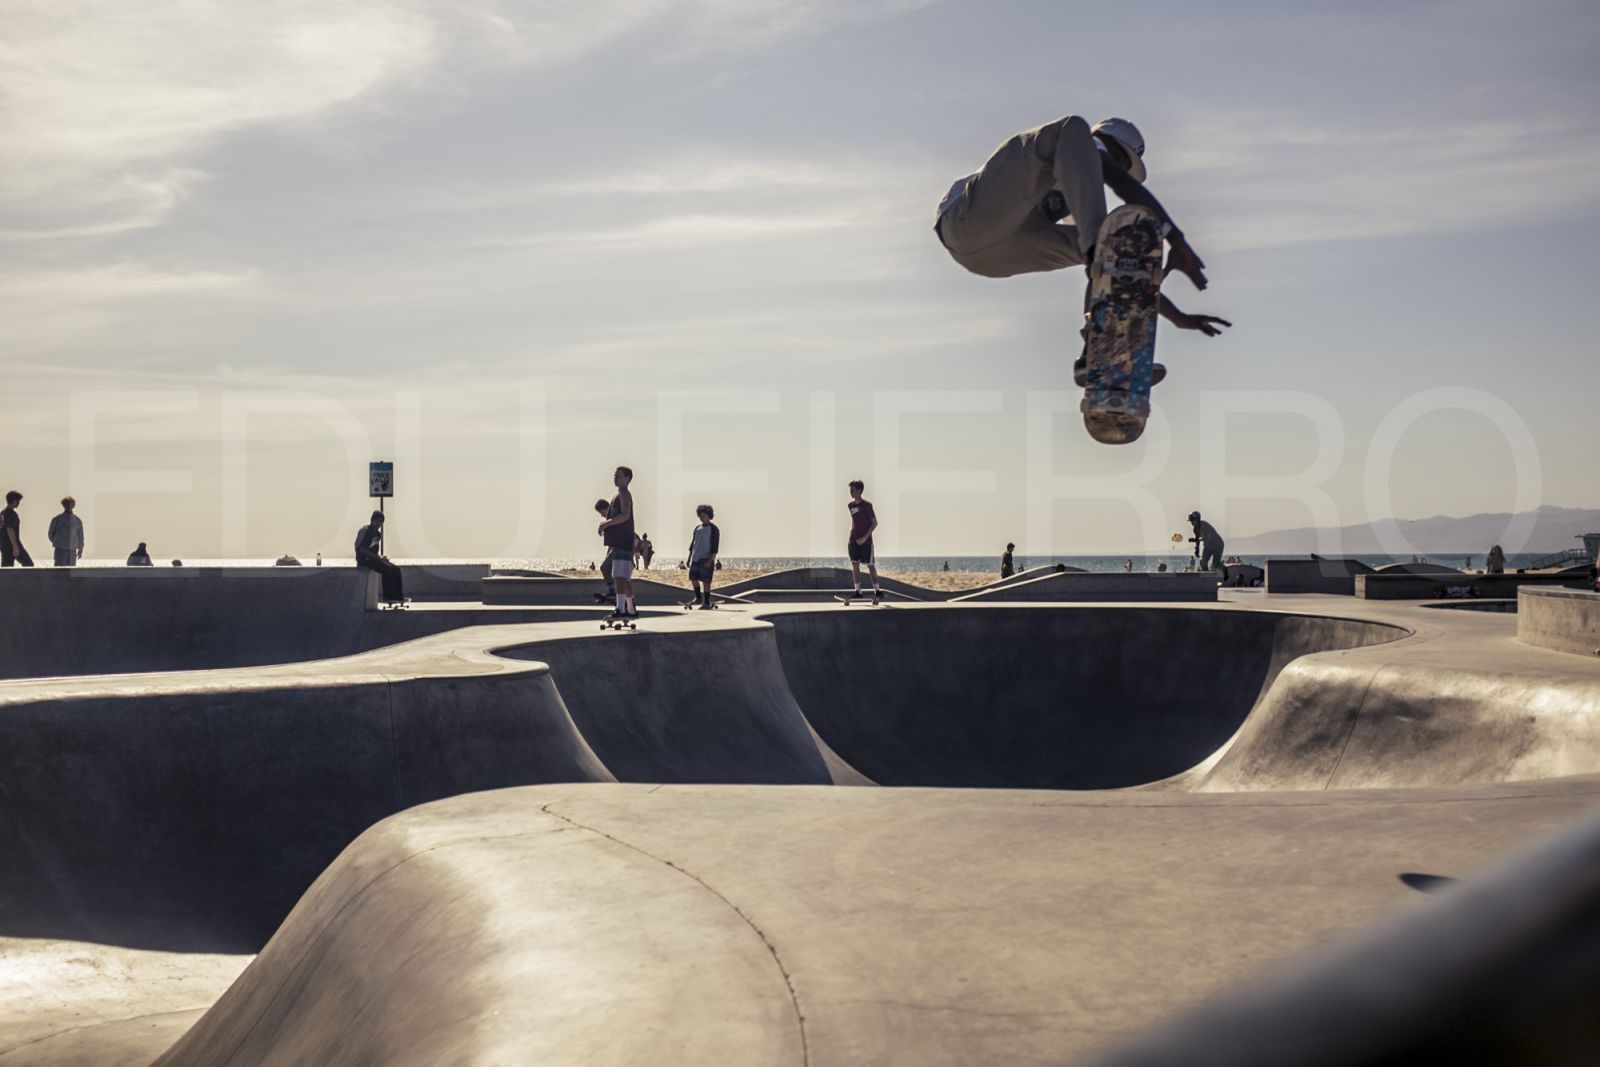 Skateboard Park at Venice Beach